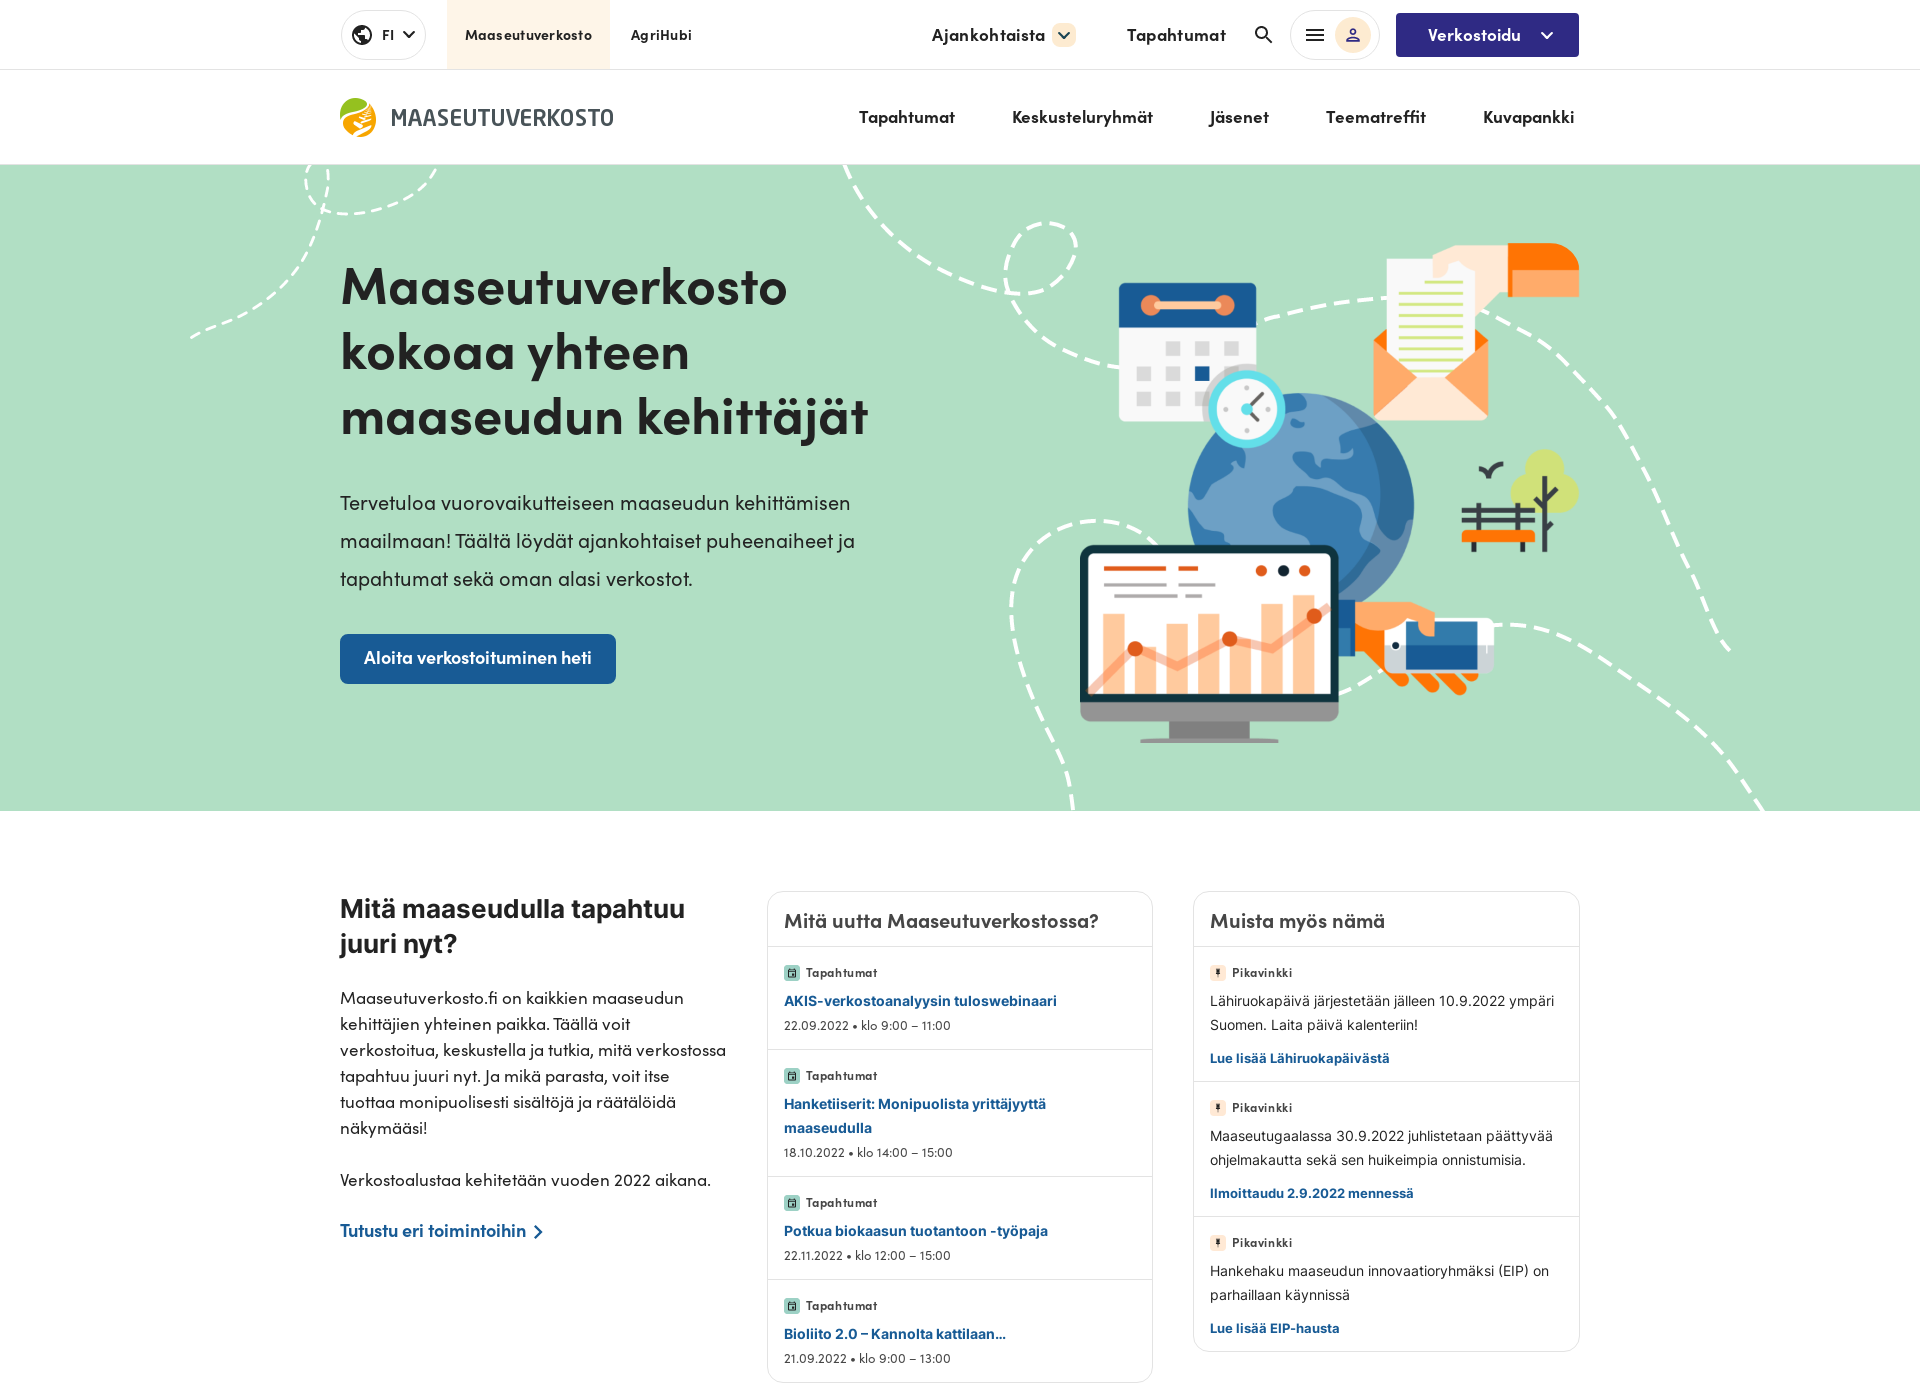 Näyttökuva maaseutuverkosto.fi